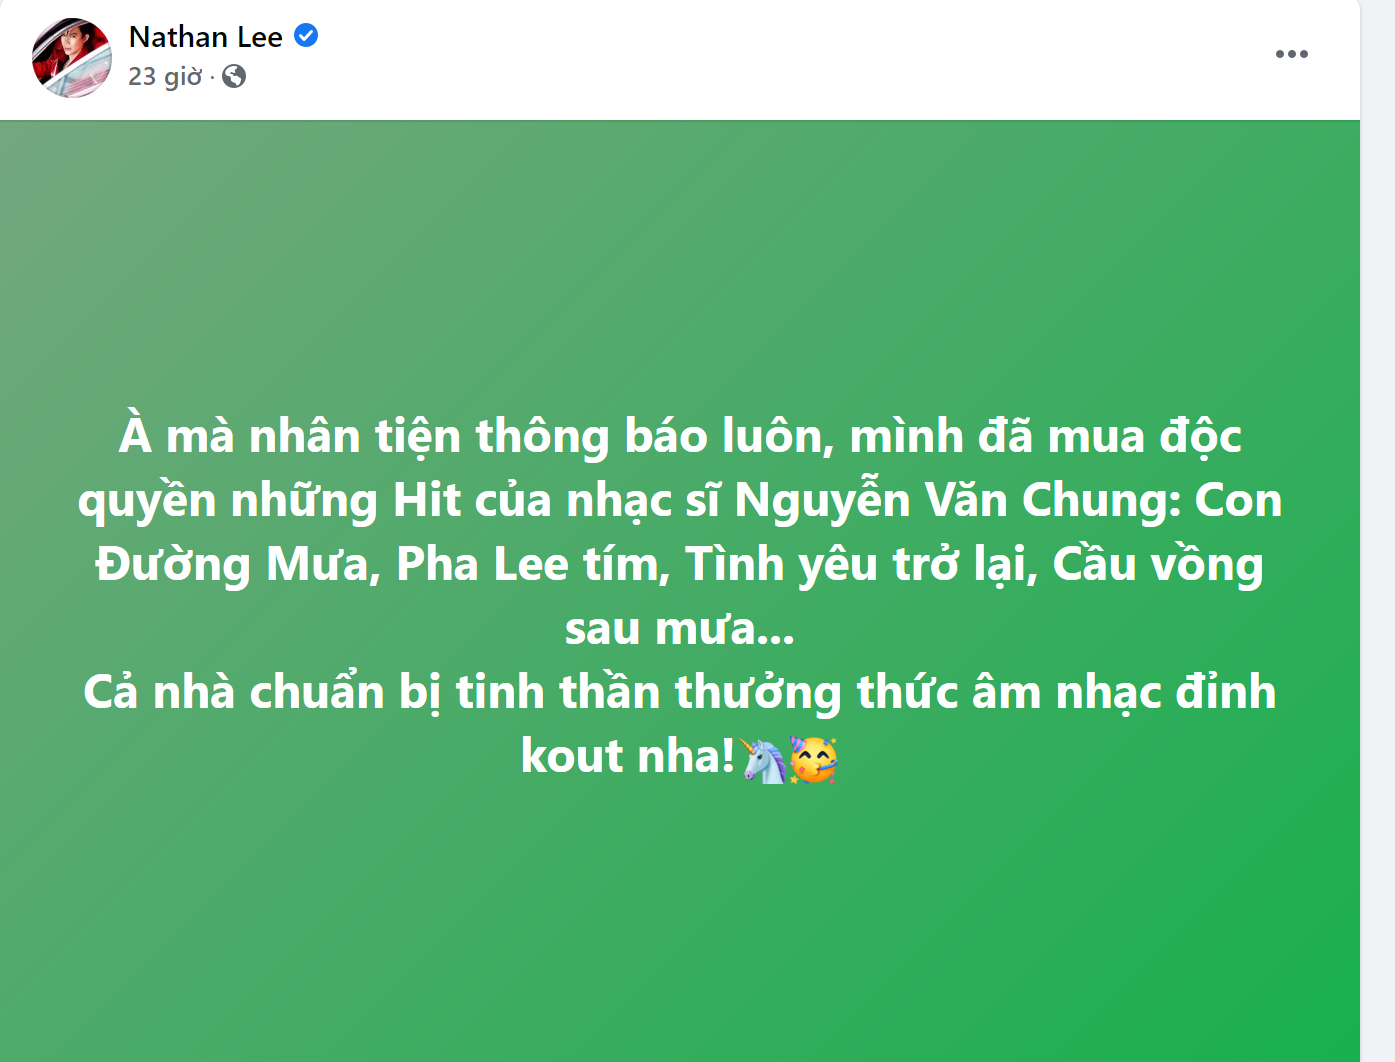 Sau tin dữ 'mất hit', Cao Thái Sơn có màn 'đáp xoáy': 'Việc ca sĩ khác hát lại những bài hát HIT của mình là điều rất đáng hoan nghênh' - Ảnh 2